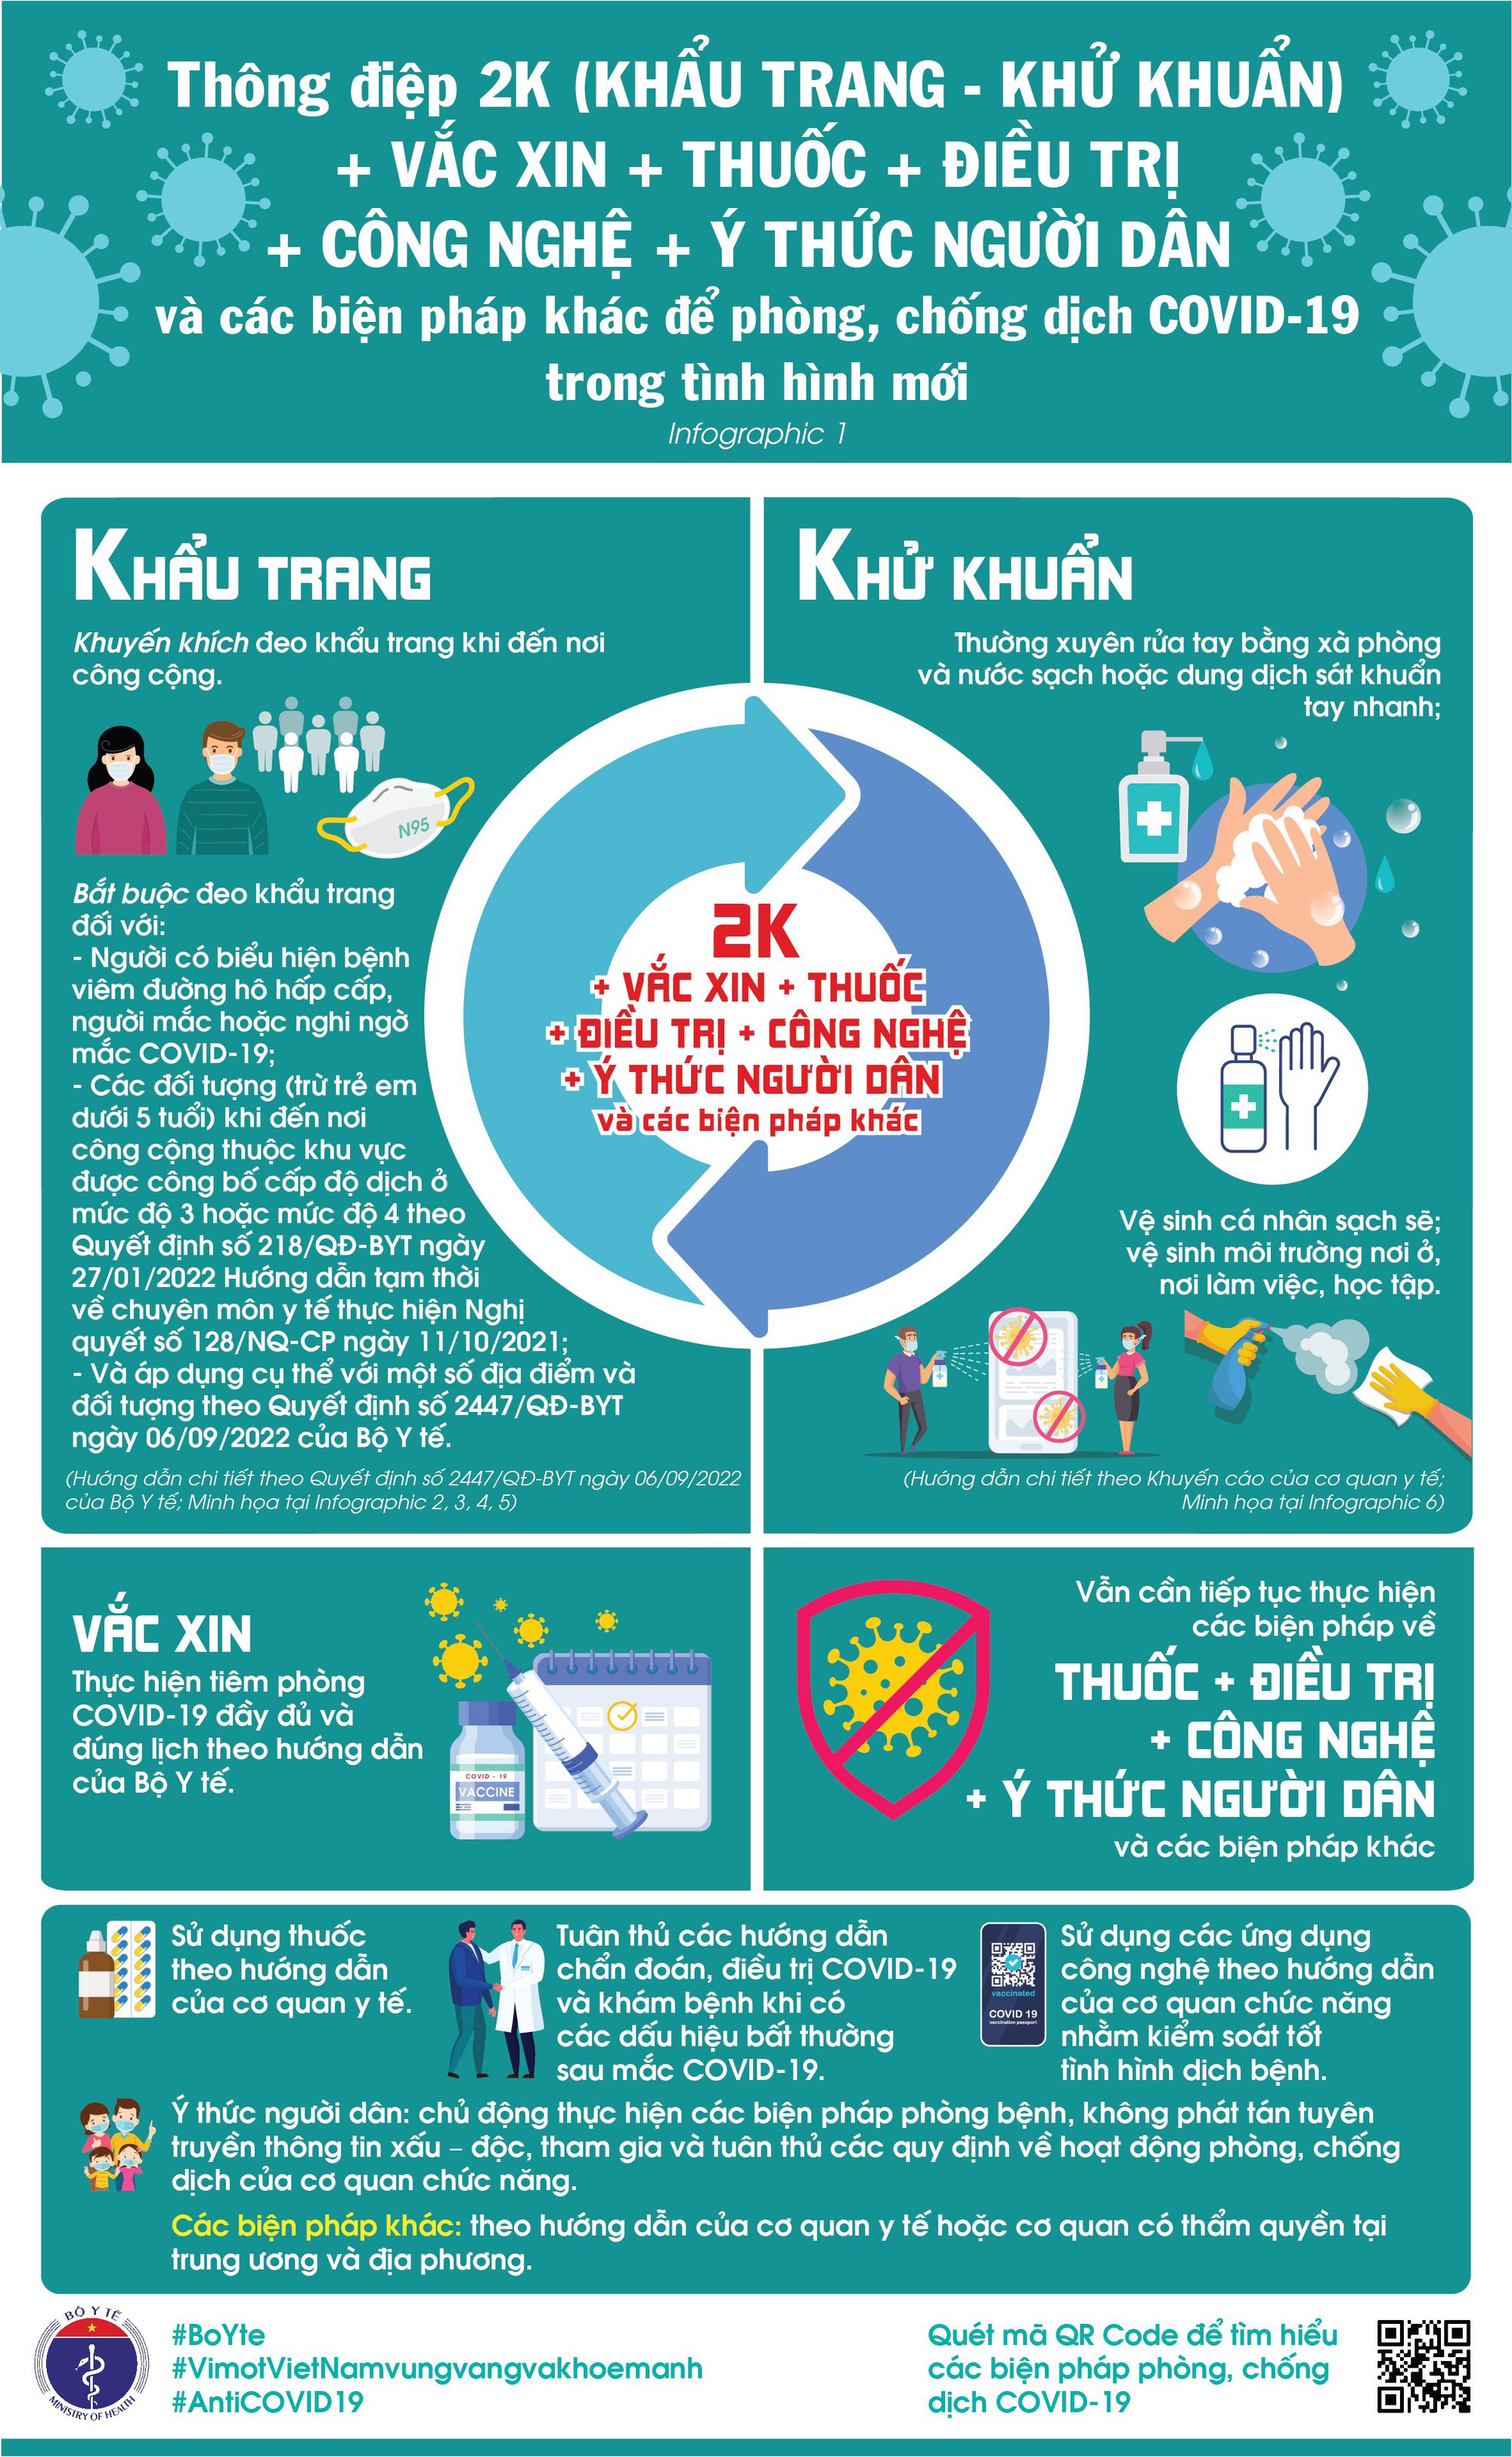 Infographic] Thông điệp 2K+ phòng chống dịch COVID-19 hiện nay - Hoạt động  của địa phương - Cổng thông tin Bộ Y tế